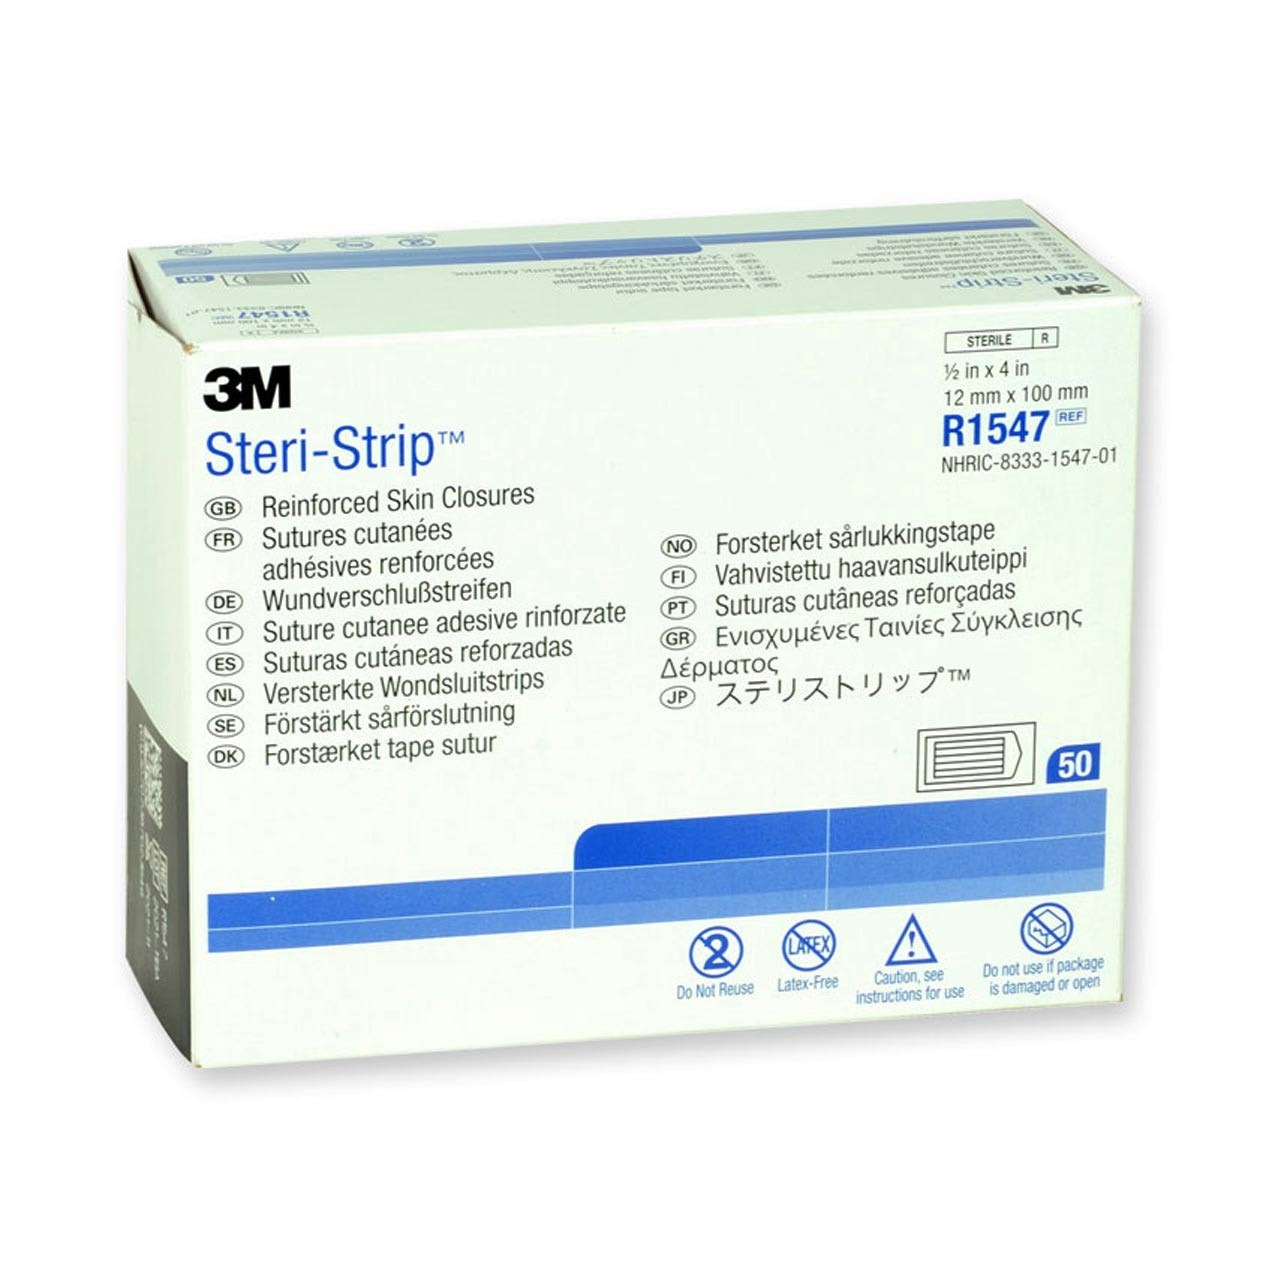 3M Steri-Strip Adhesive Skin Closures Reinforced